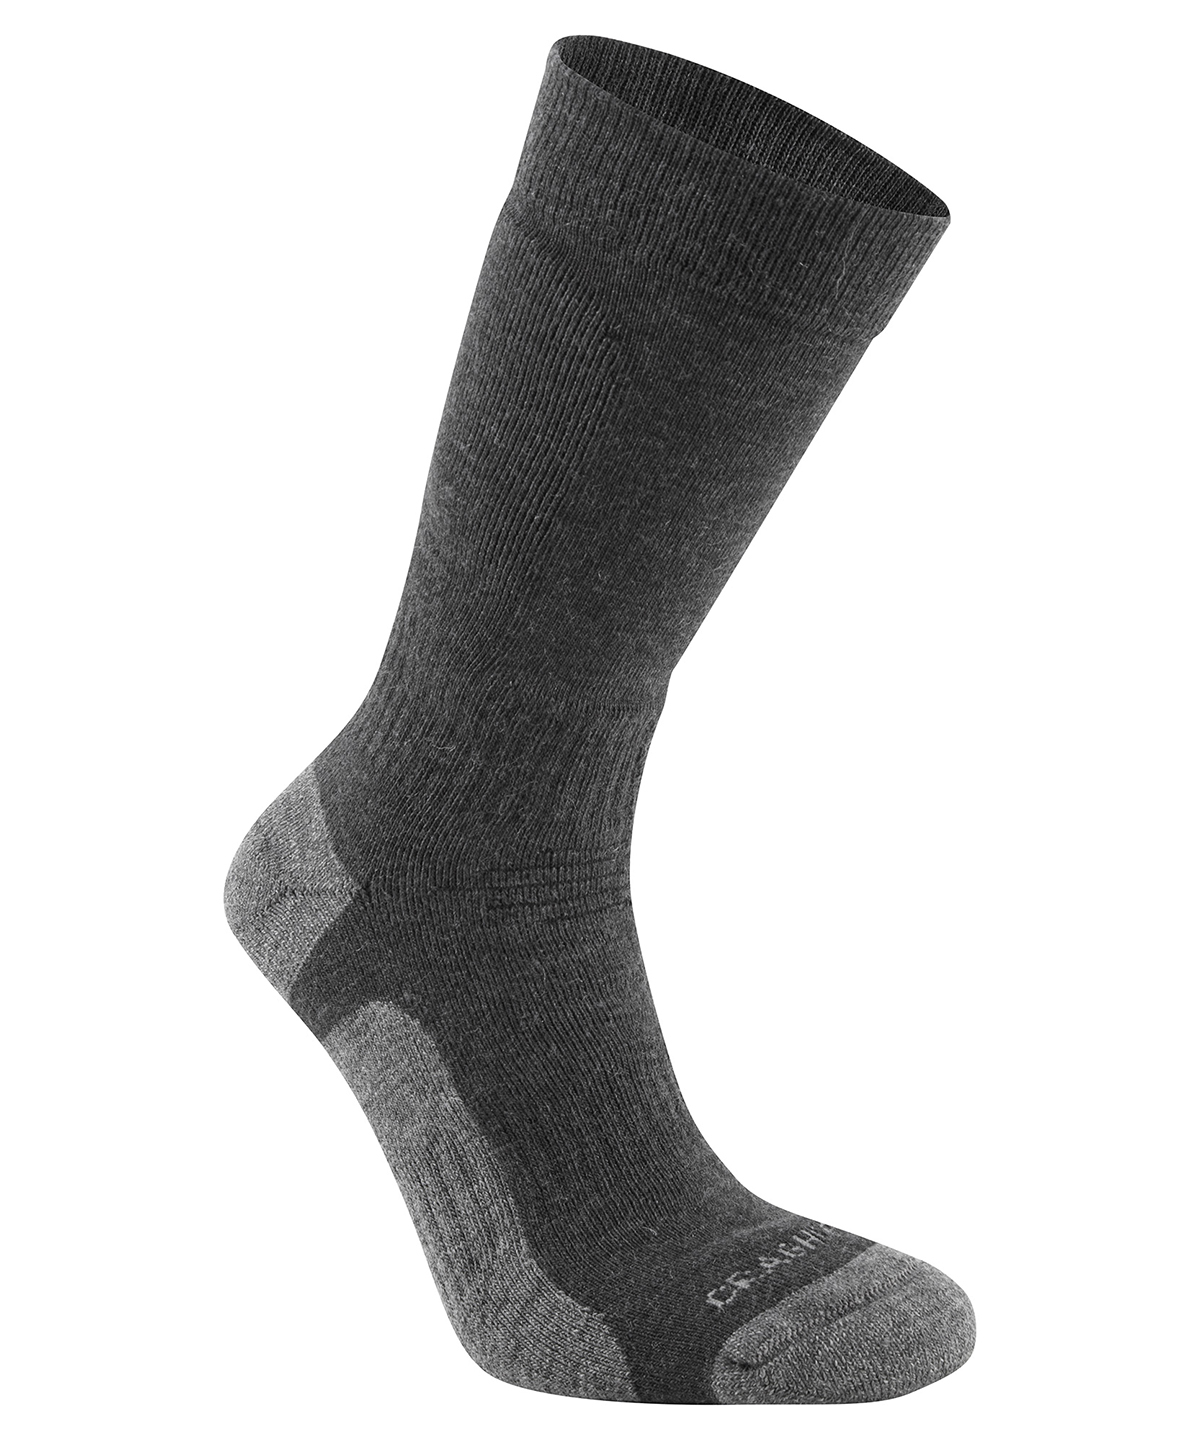 Expert Trek Socks Black Size 68